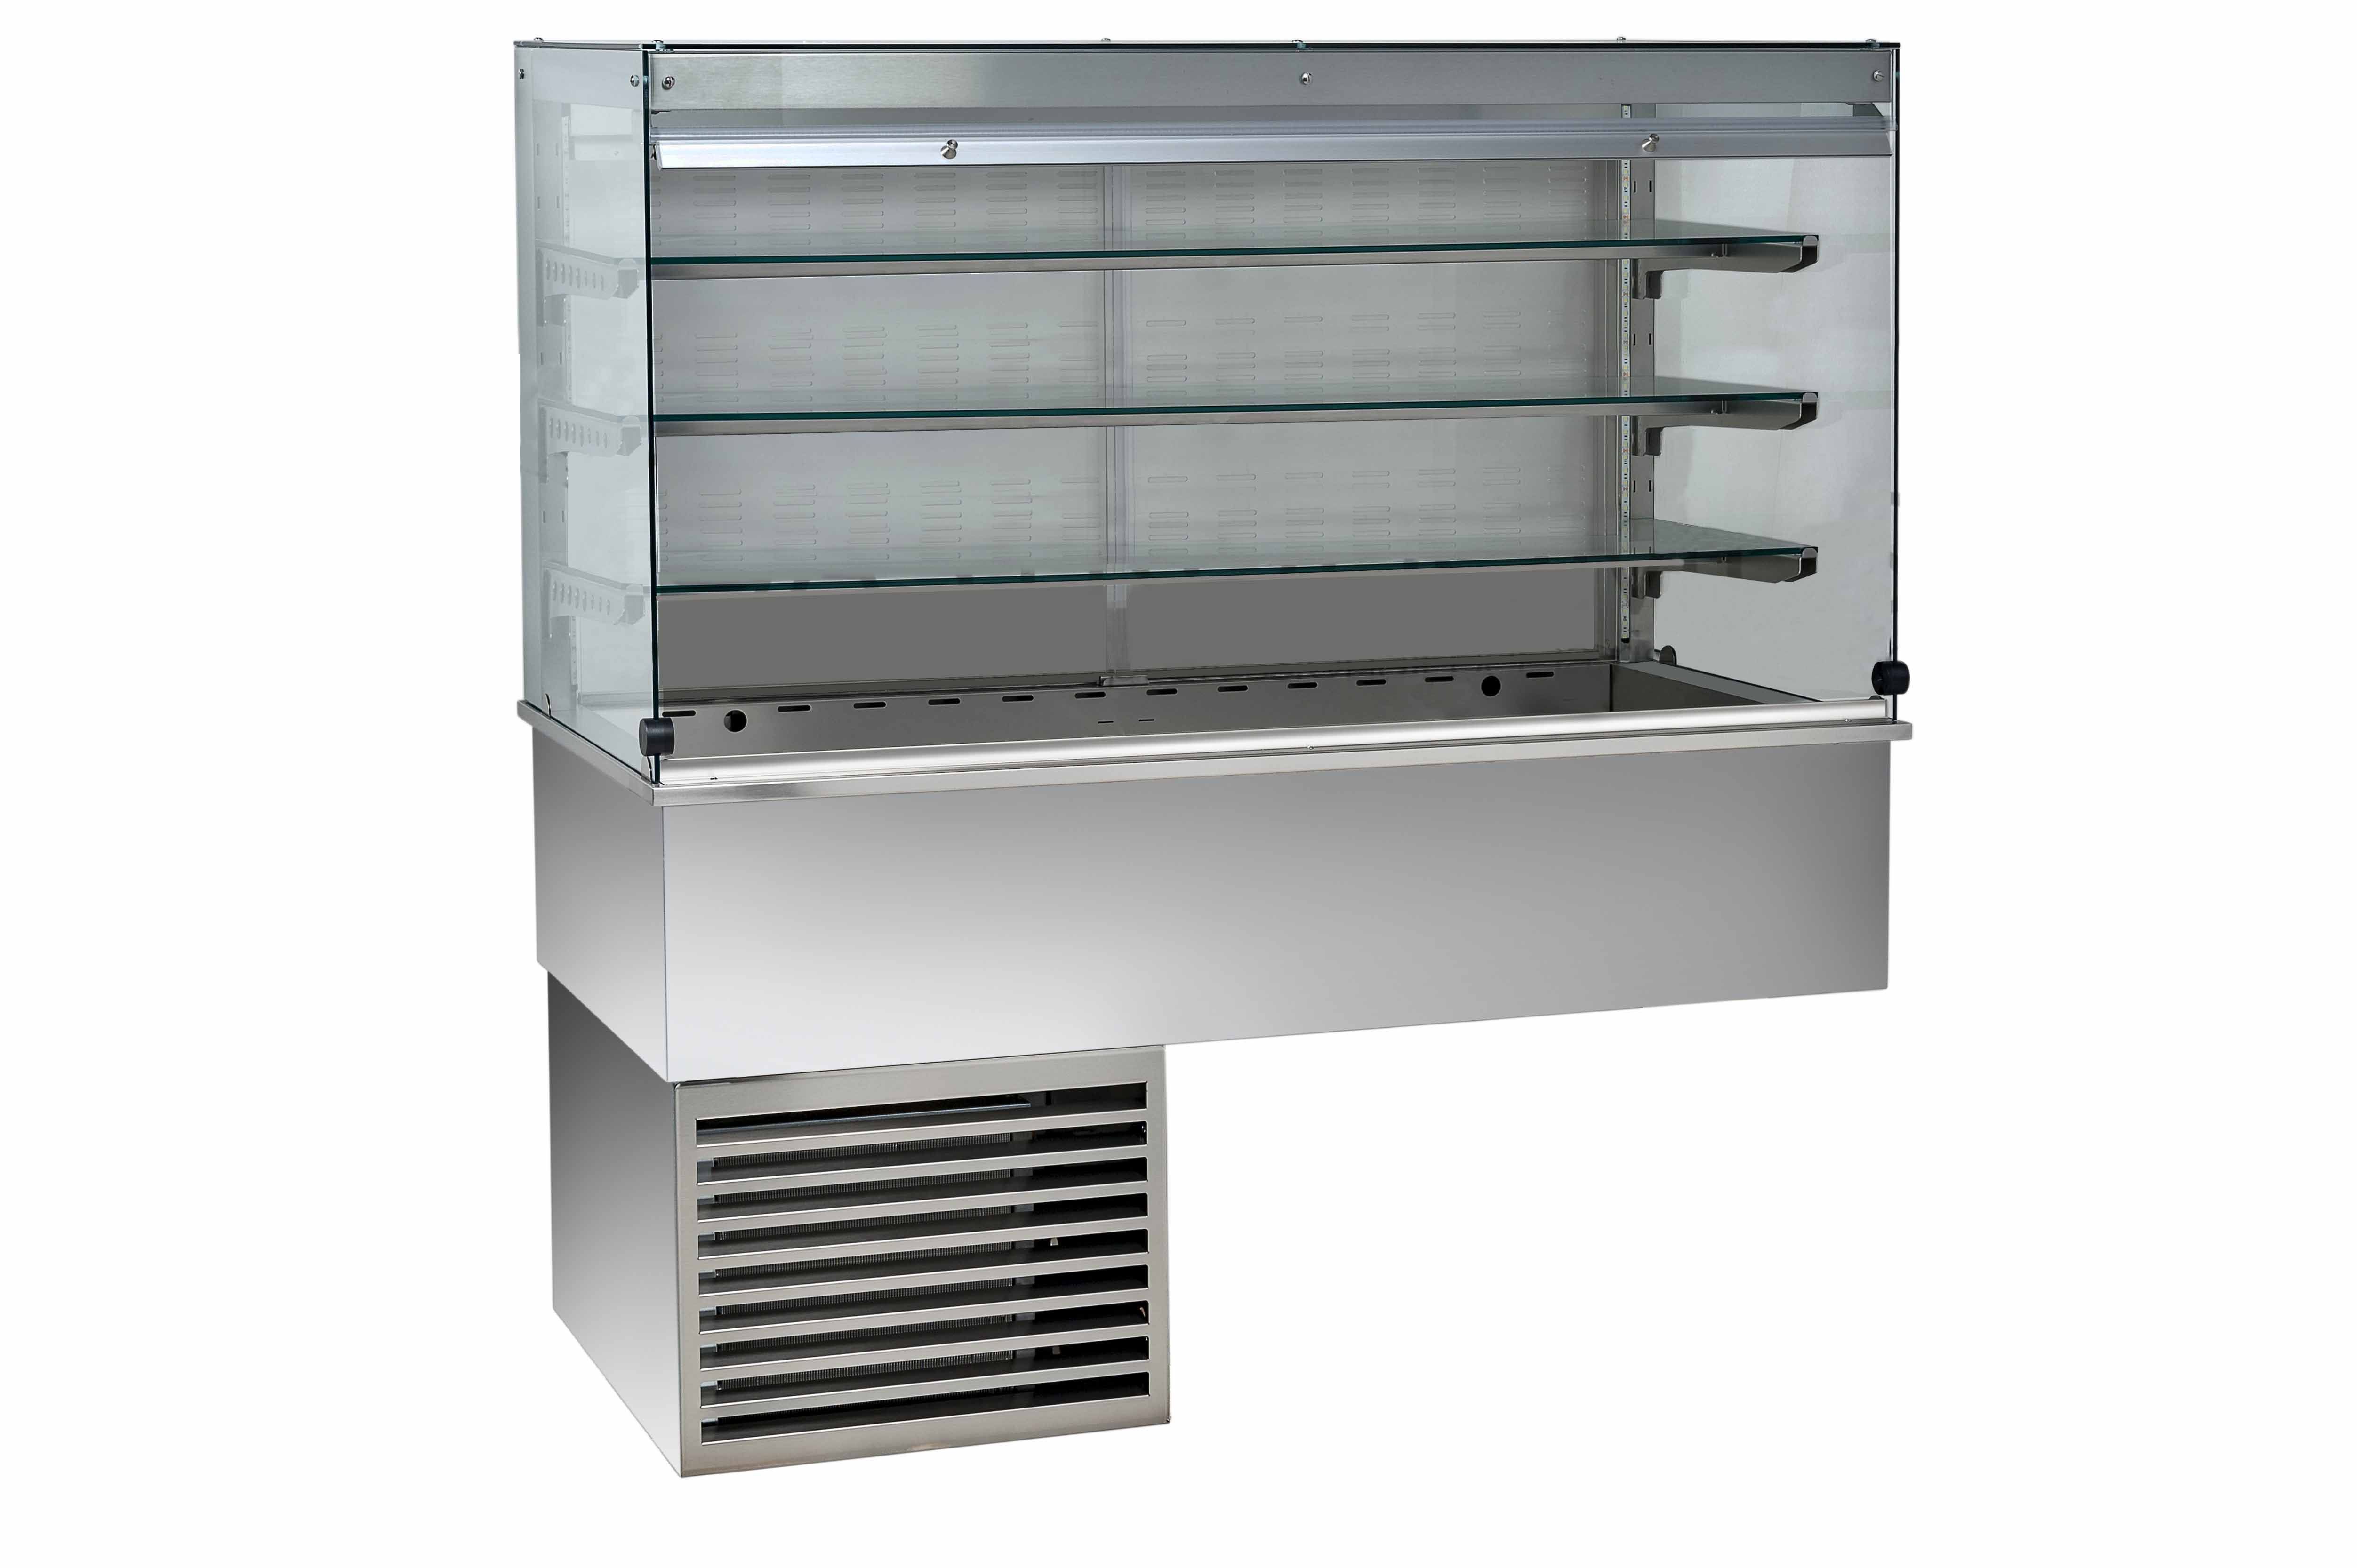 Kühlvitrine – Umluftkühlung – kubisch – 3 Ablagen – Kundenseite geschlossen – B 1460 mm